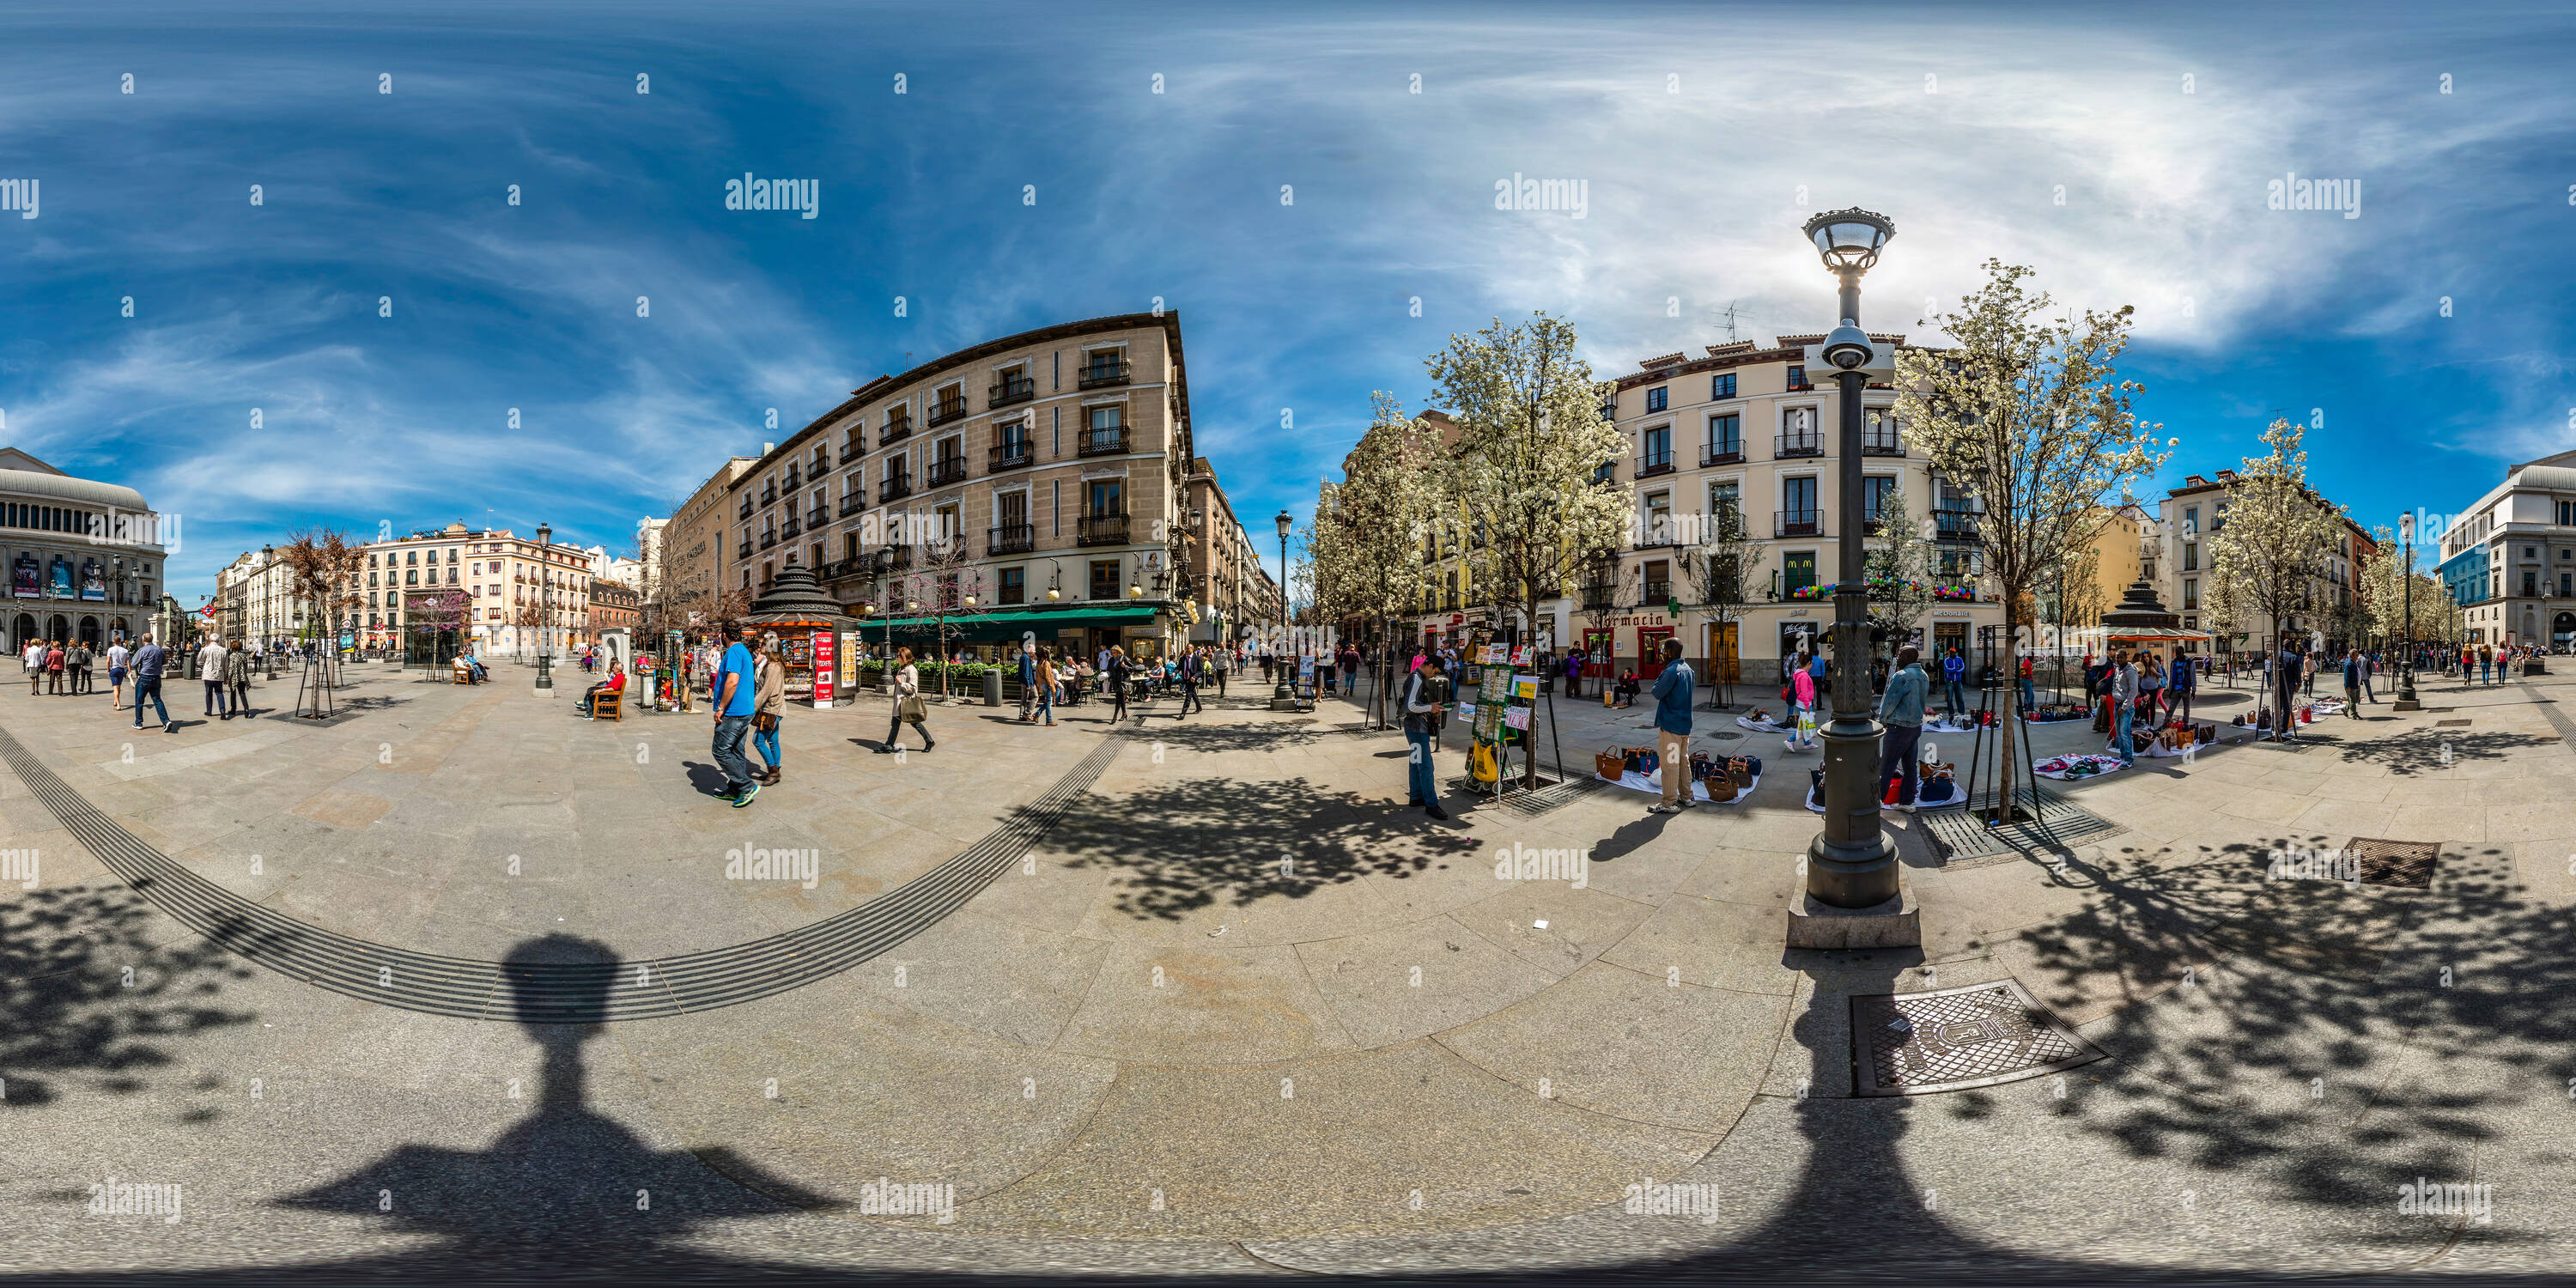 Visualizzazione panoramica a 360 gradi di Plaza de Isabel II